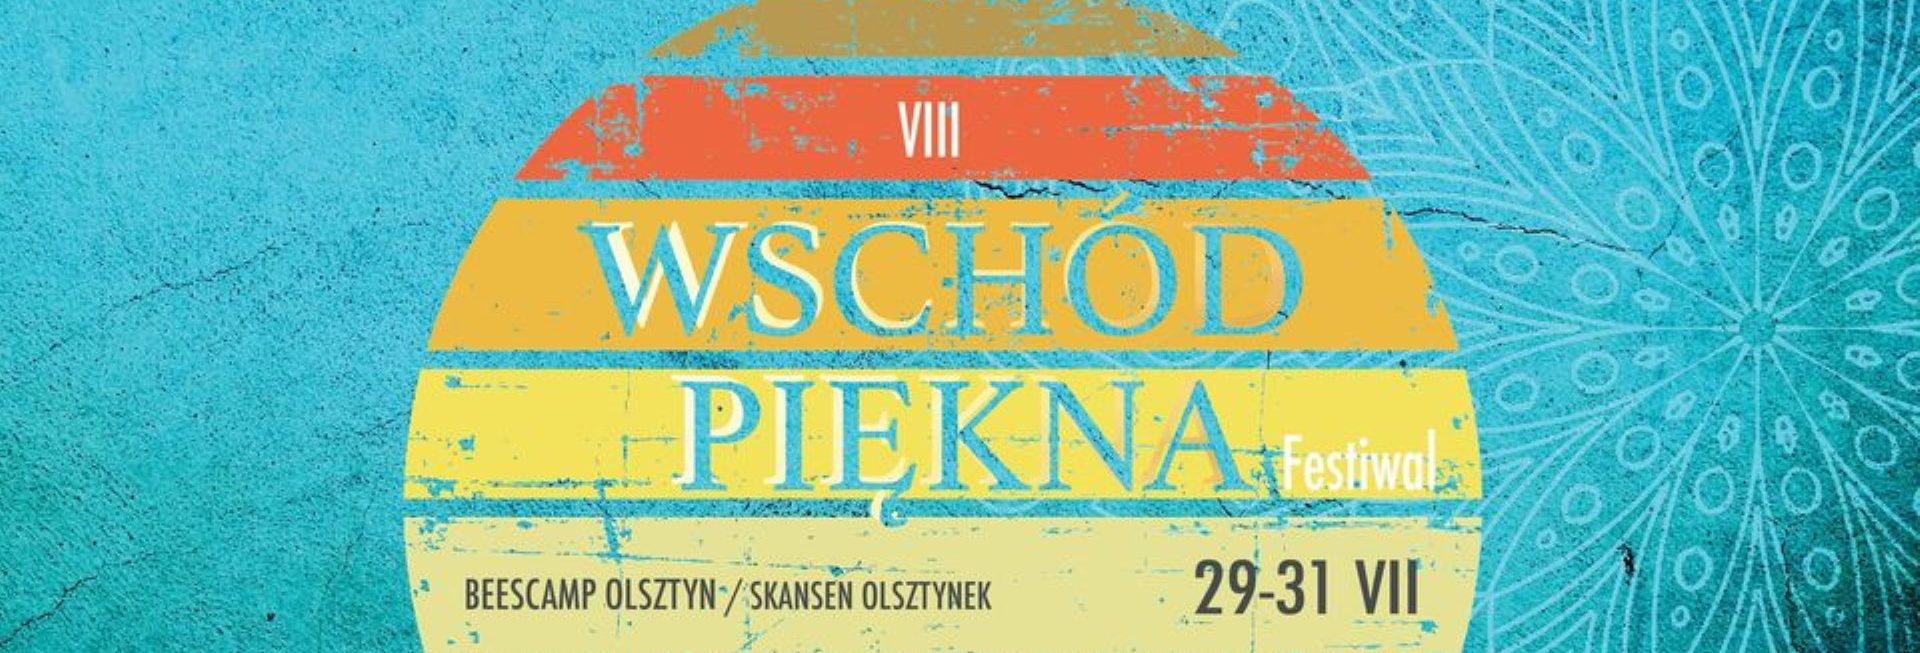 Plakat graficzny zapraszający do Olsztyna i Muzeum Budownictwa Ludowego w Olsztynku na 8. edycję Festivalu Wschód Piękna - Olsztyn & Olsztynek Skansen 2022. 